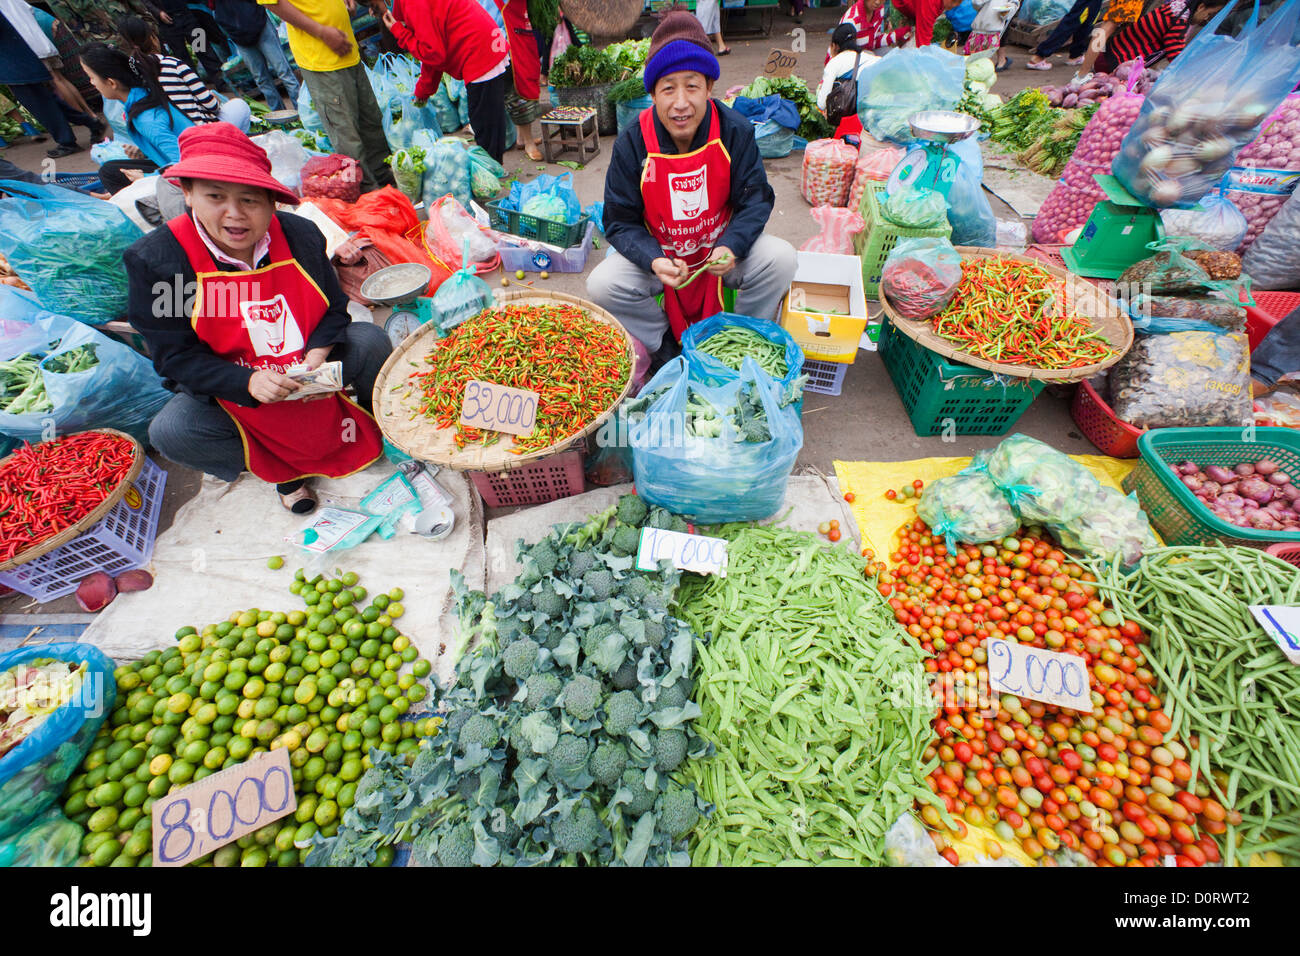 Asien, Laos, Vientiane, Markt, Märkte, asiatischen Markt, Markt, Gemüse, asiatische Küche nass Stockfoto